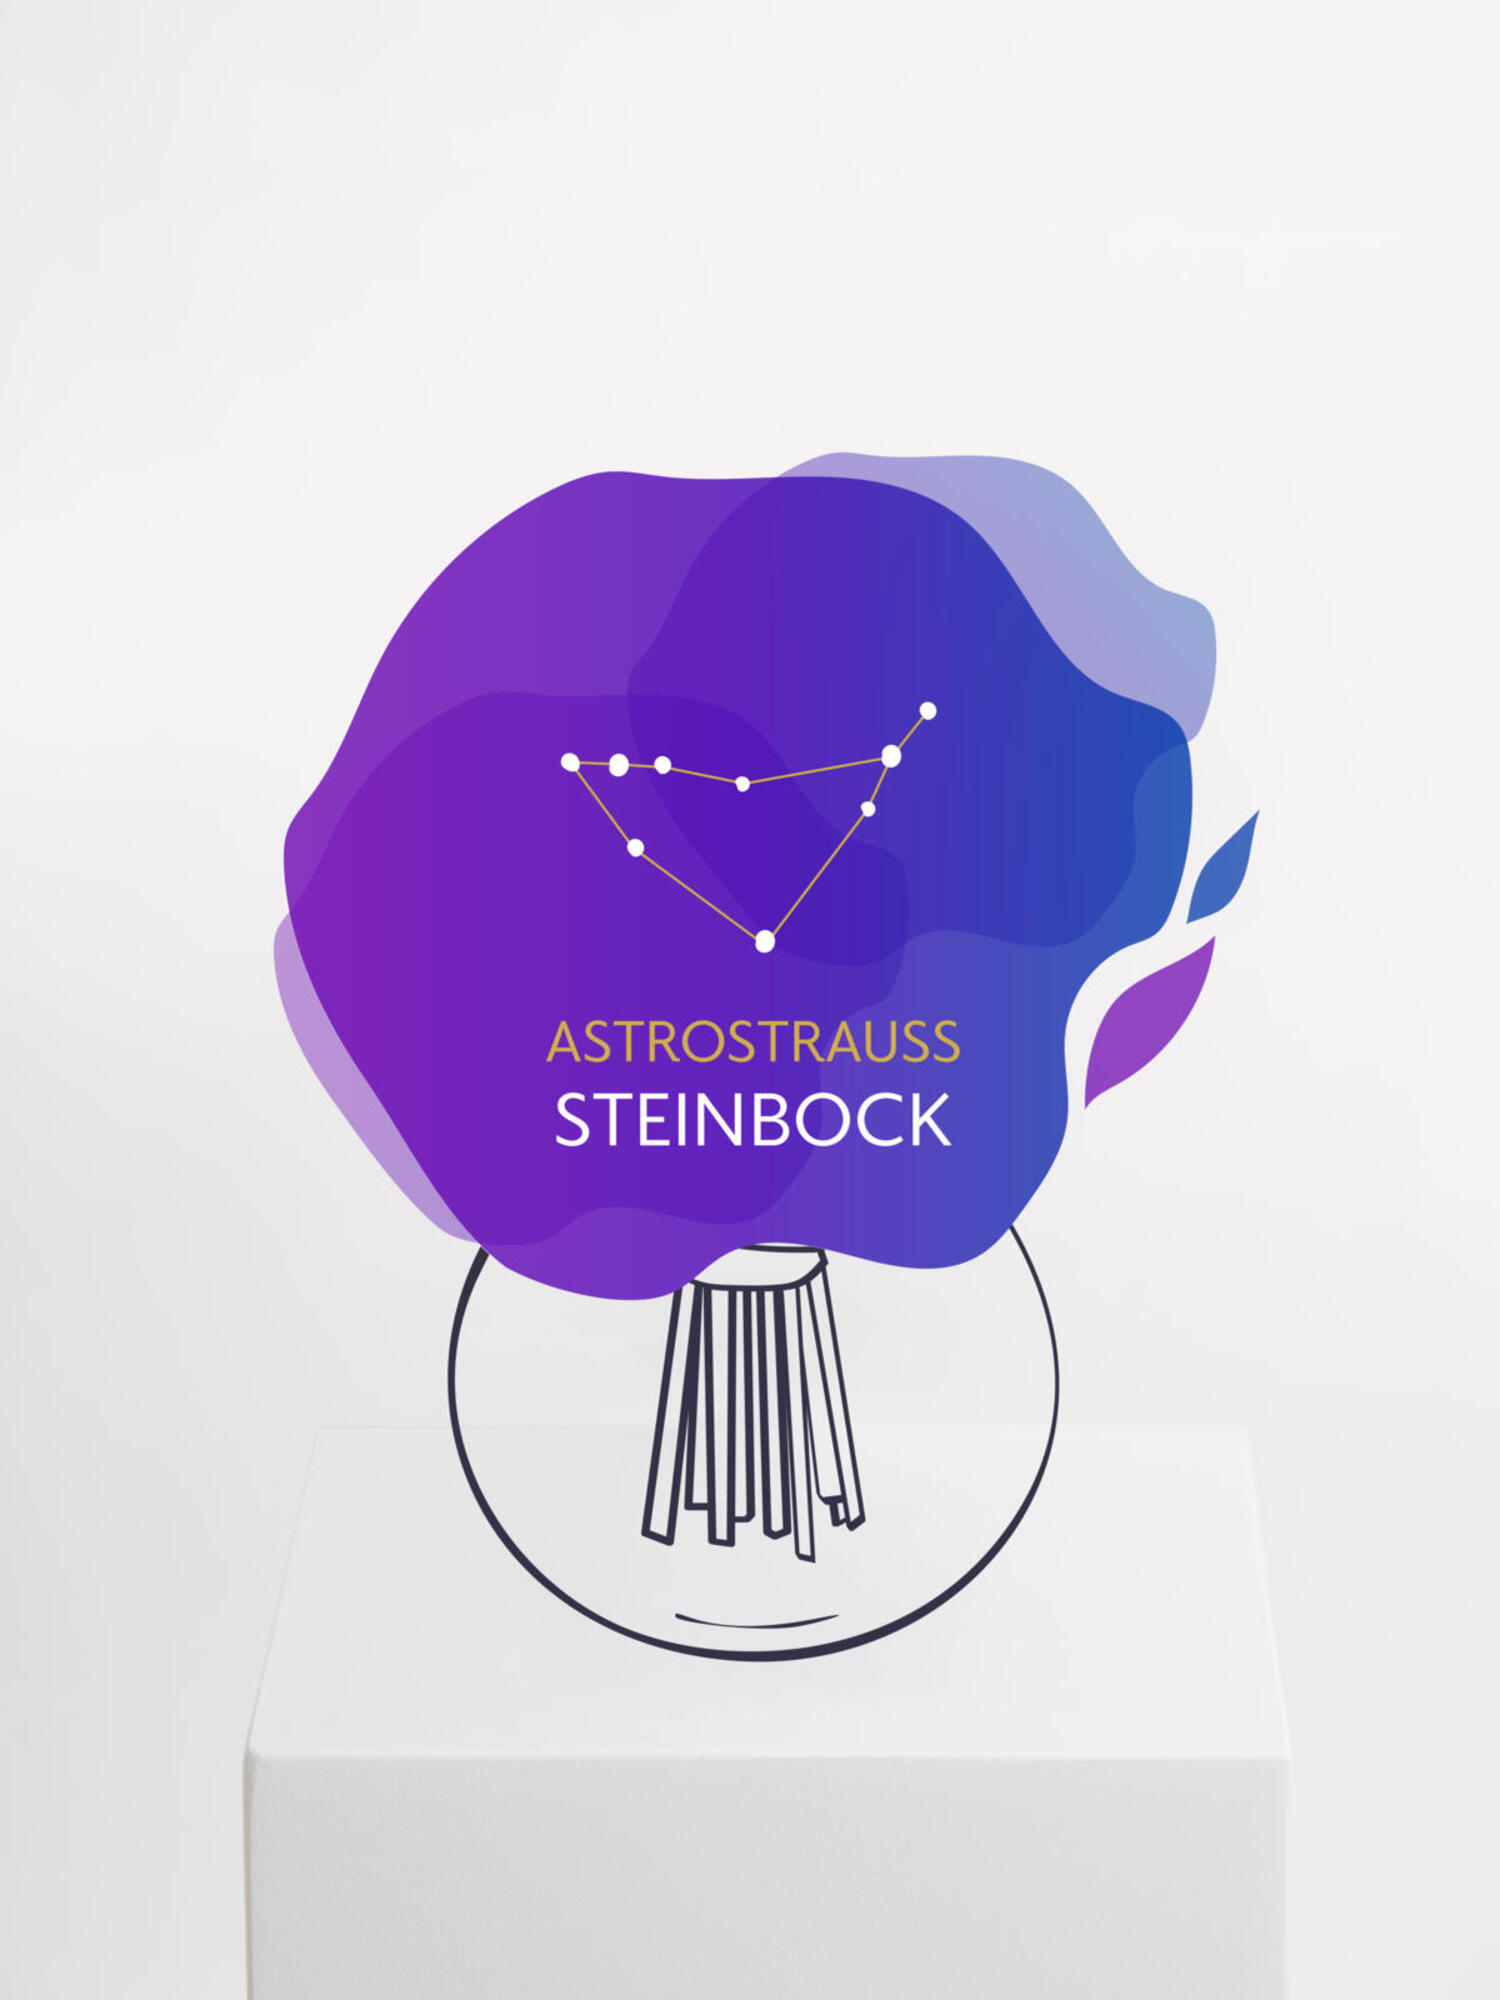 Astrostrauß Steinbock